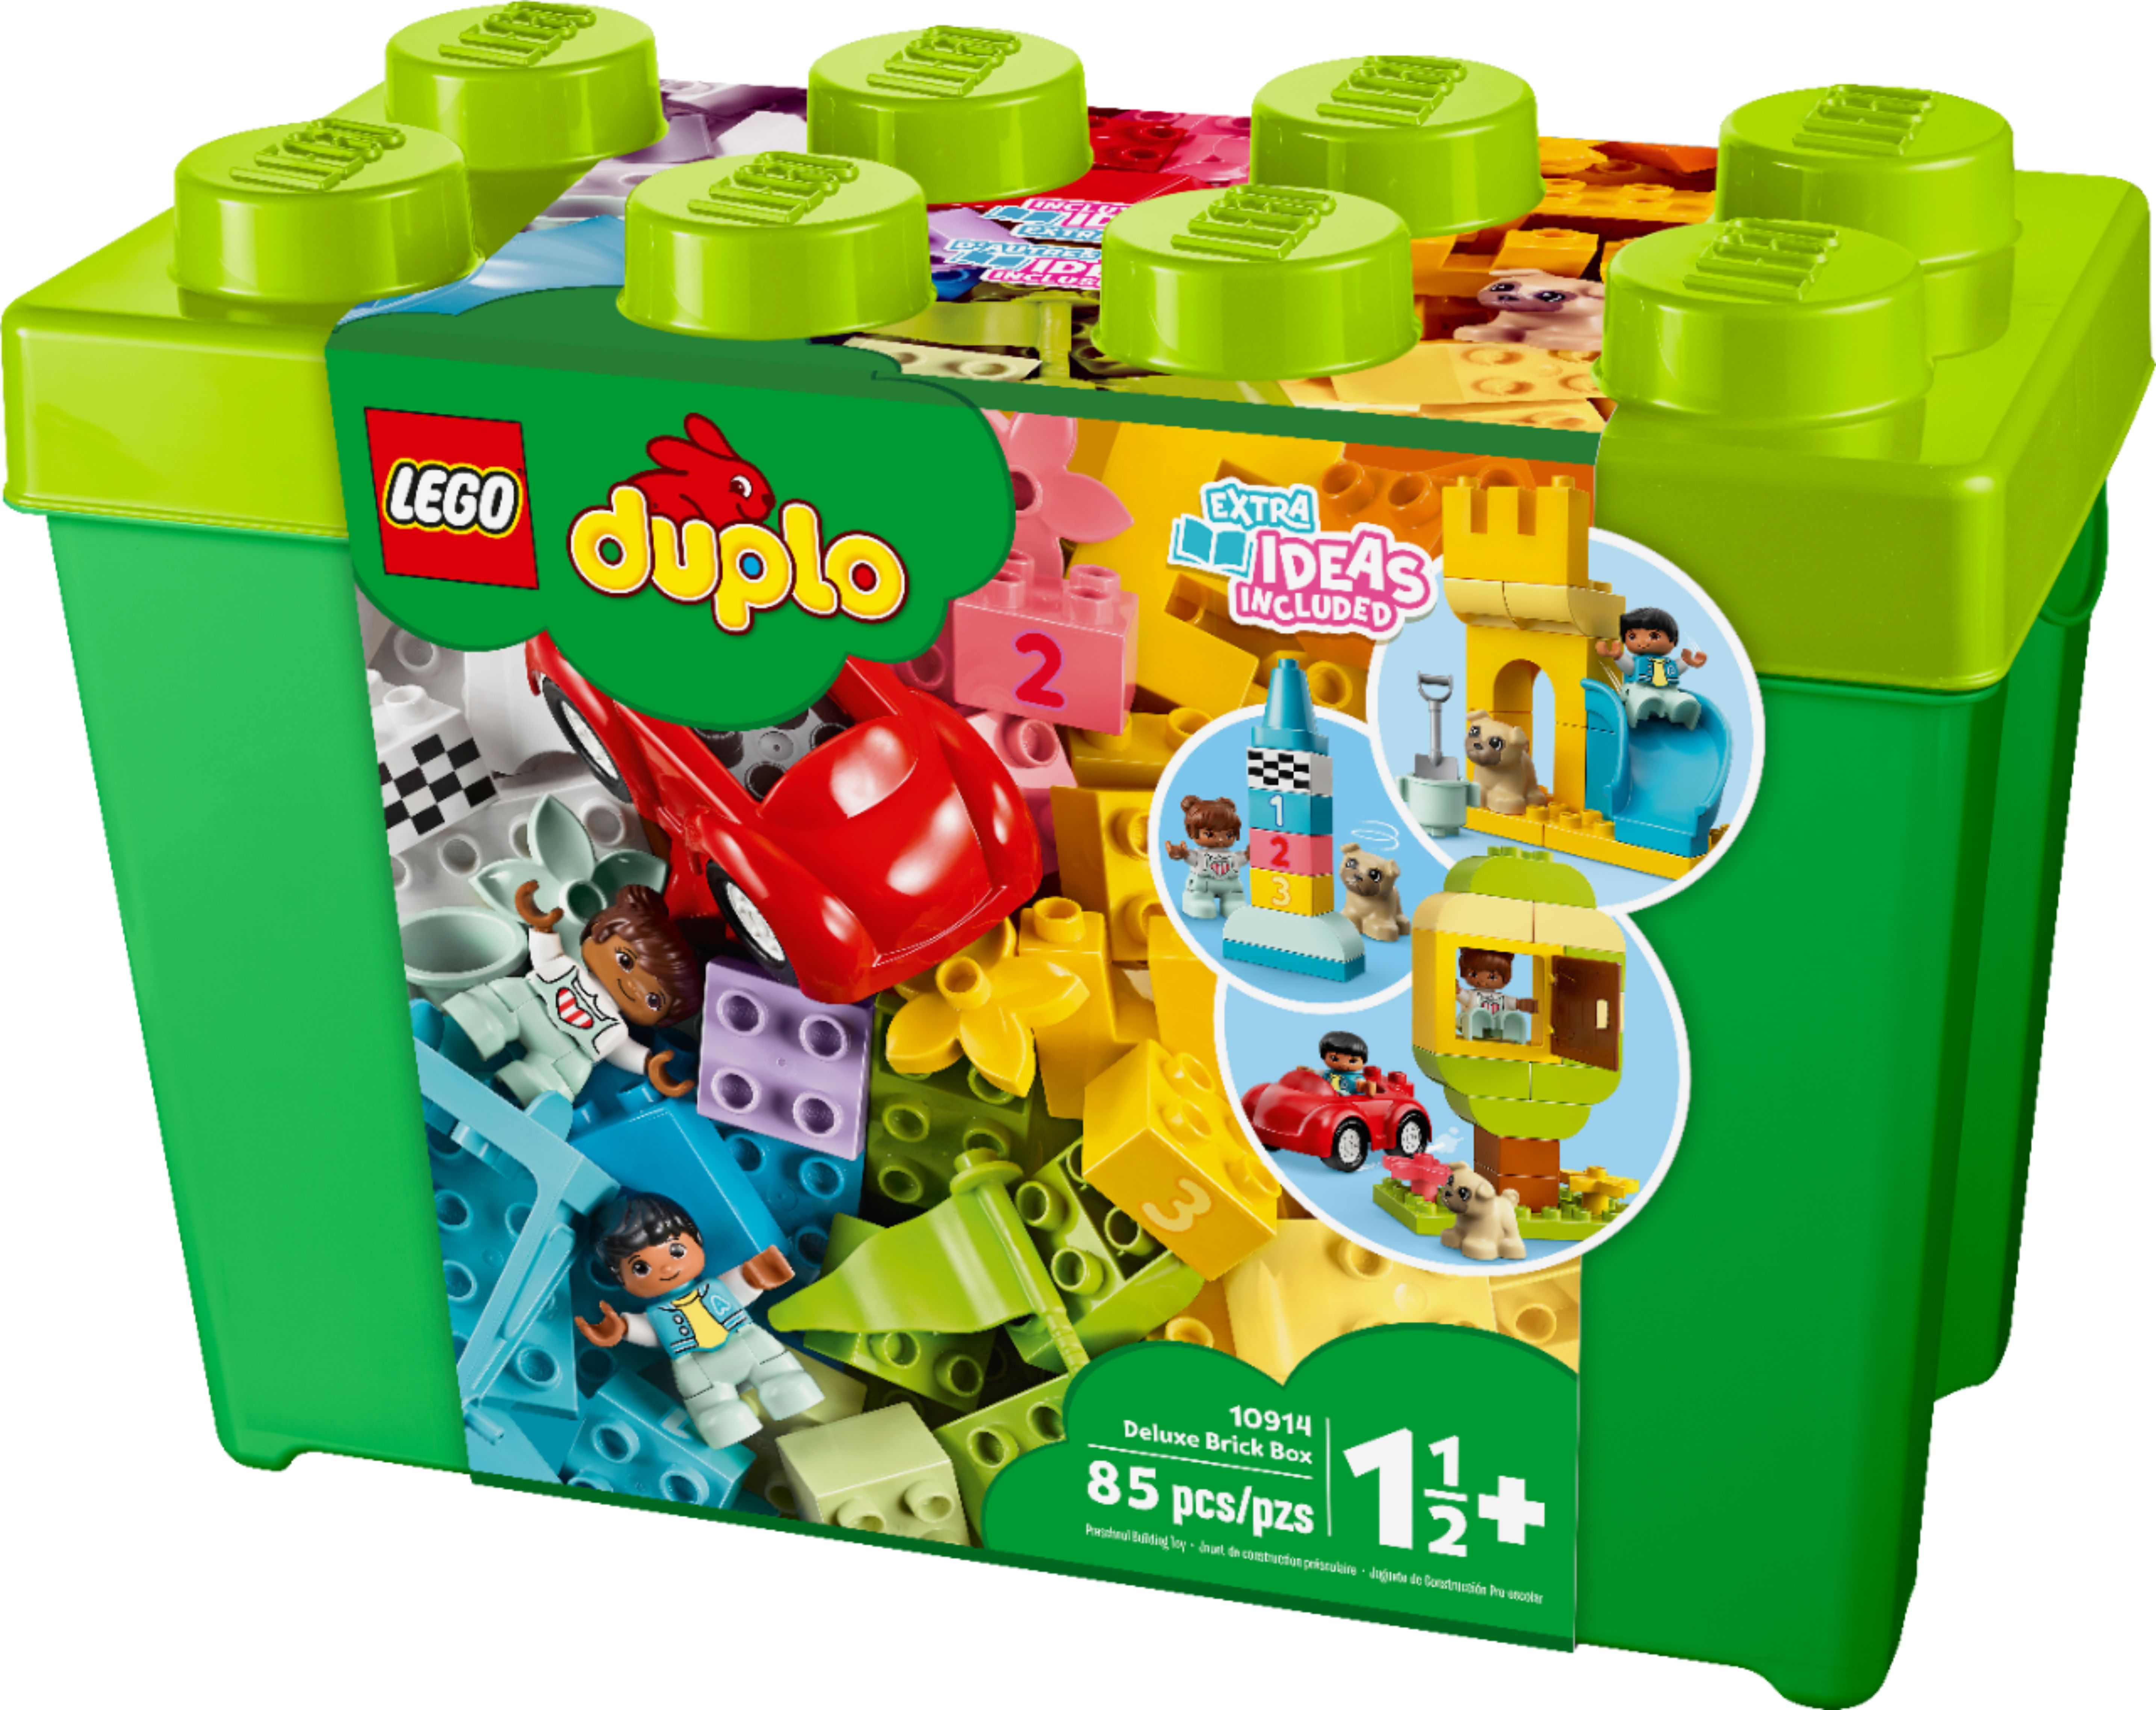 LEGO DUPLO Basic Bricks 4908